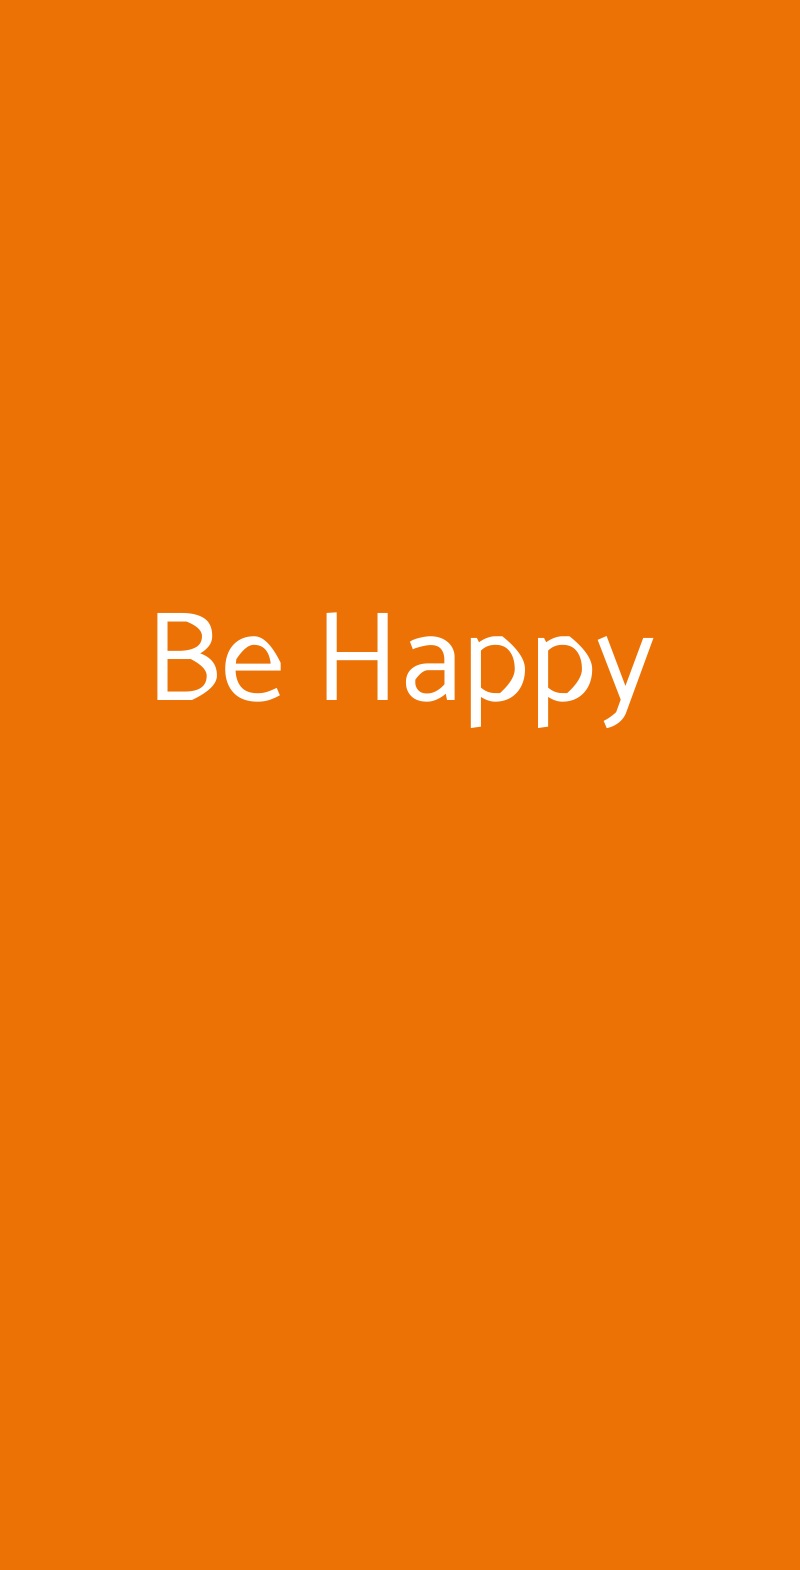 Be Happy Crema menù 1 pagina